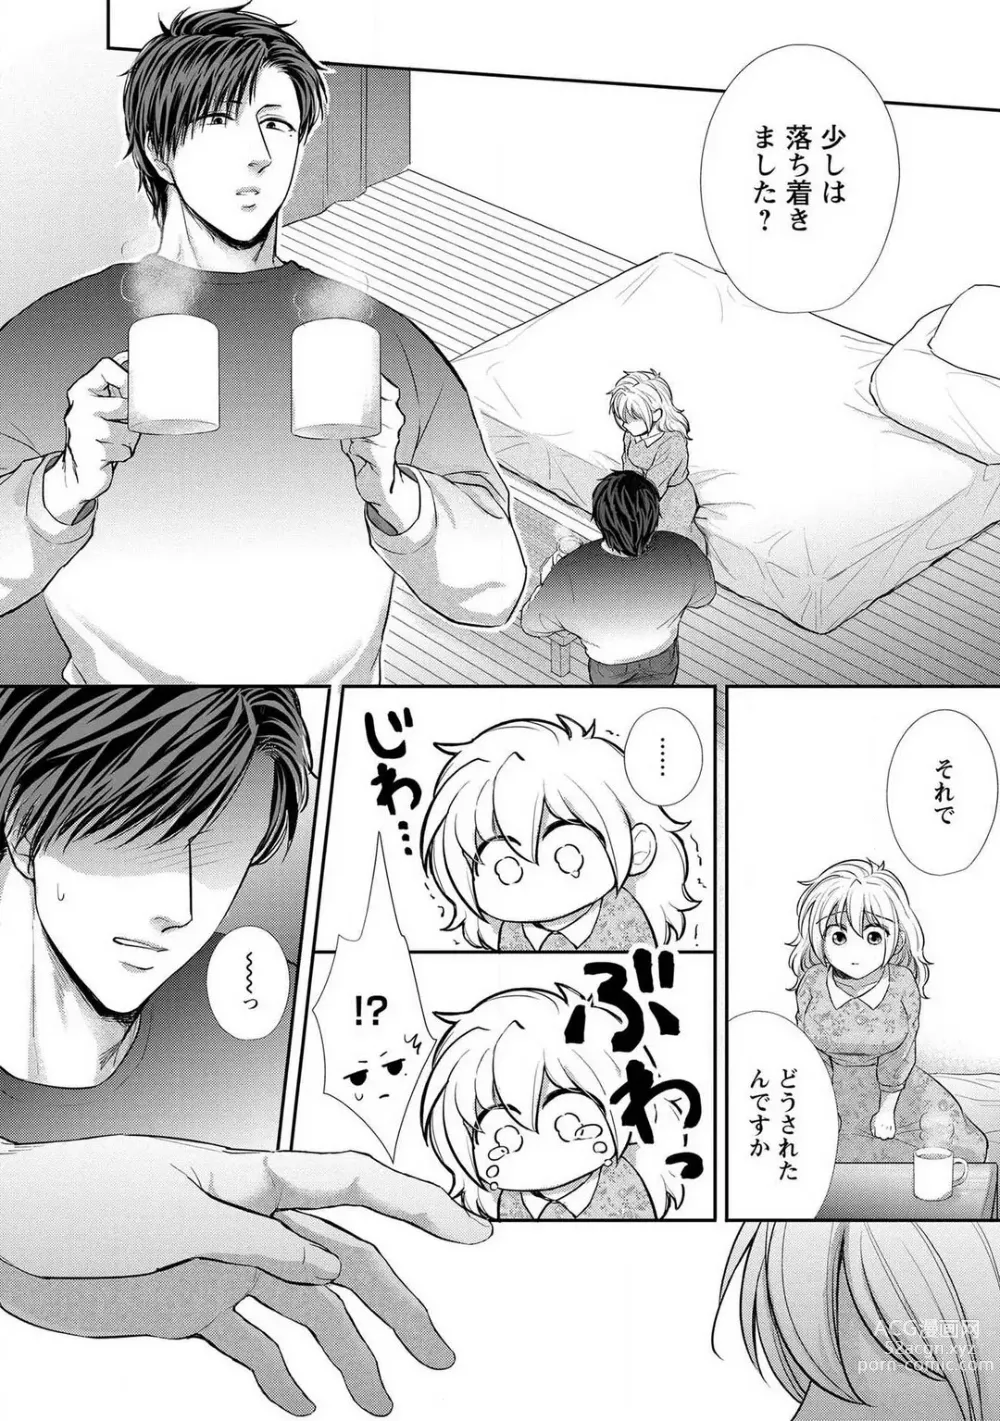 Page 137 of manga Pyuuru